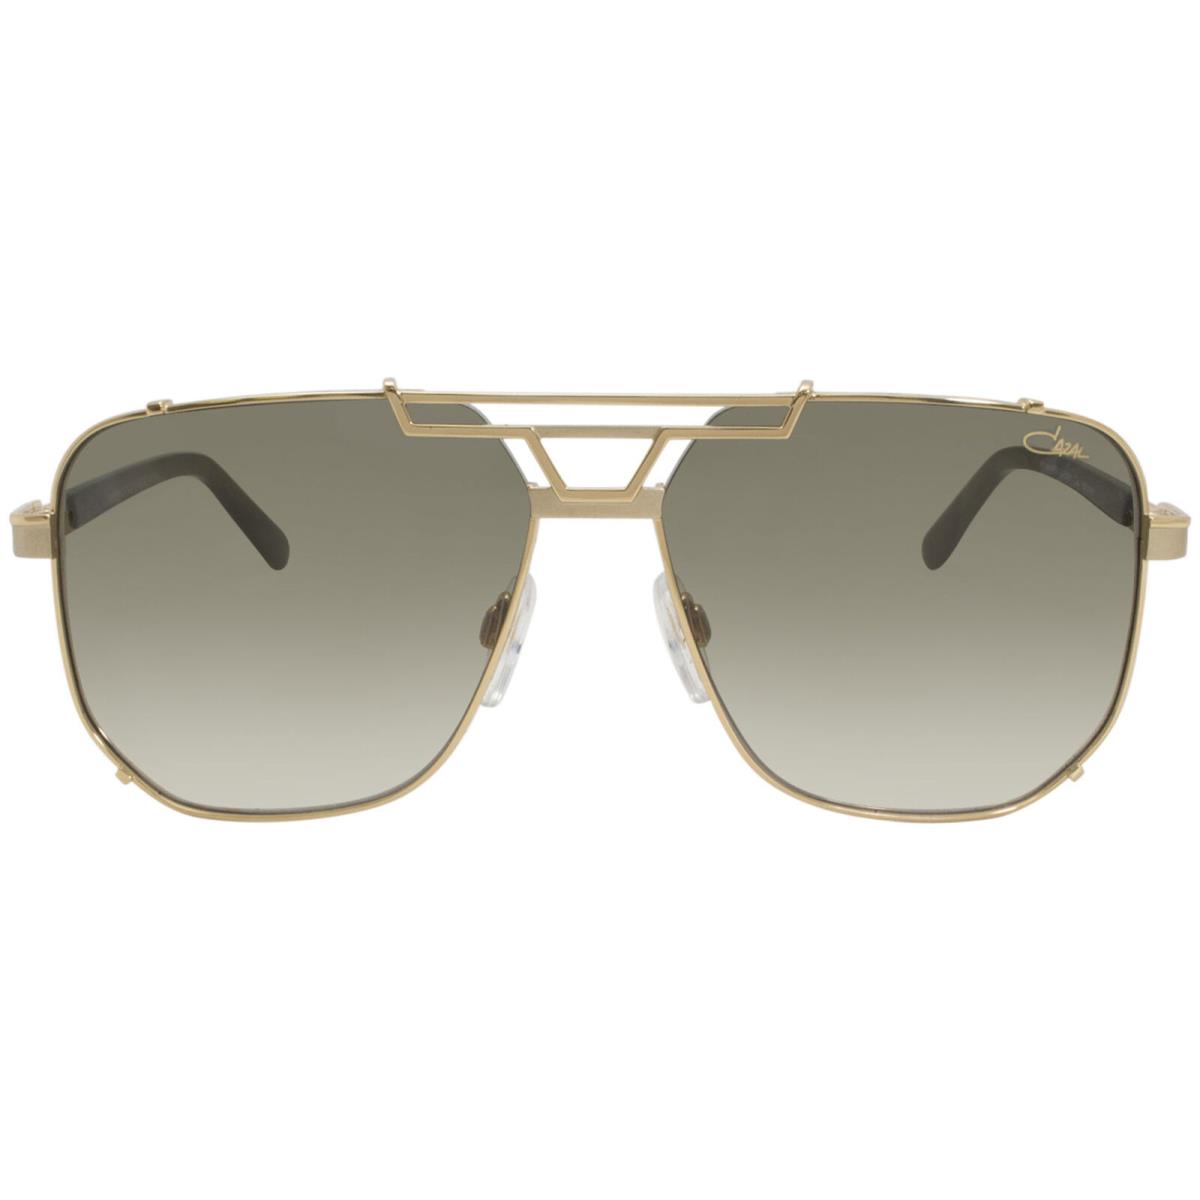 Cazal 9090 003 Sunglasses Men`s Gold-black/green Gradient Lenses Pilot 59mm